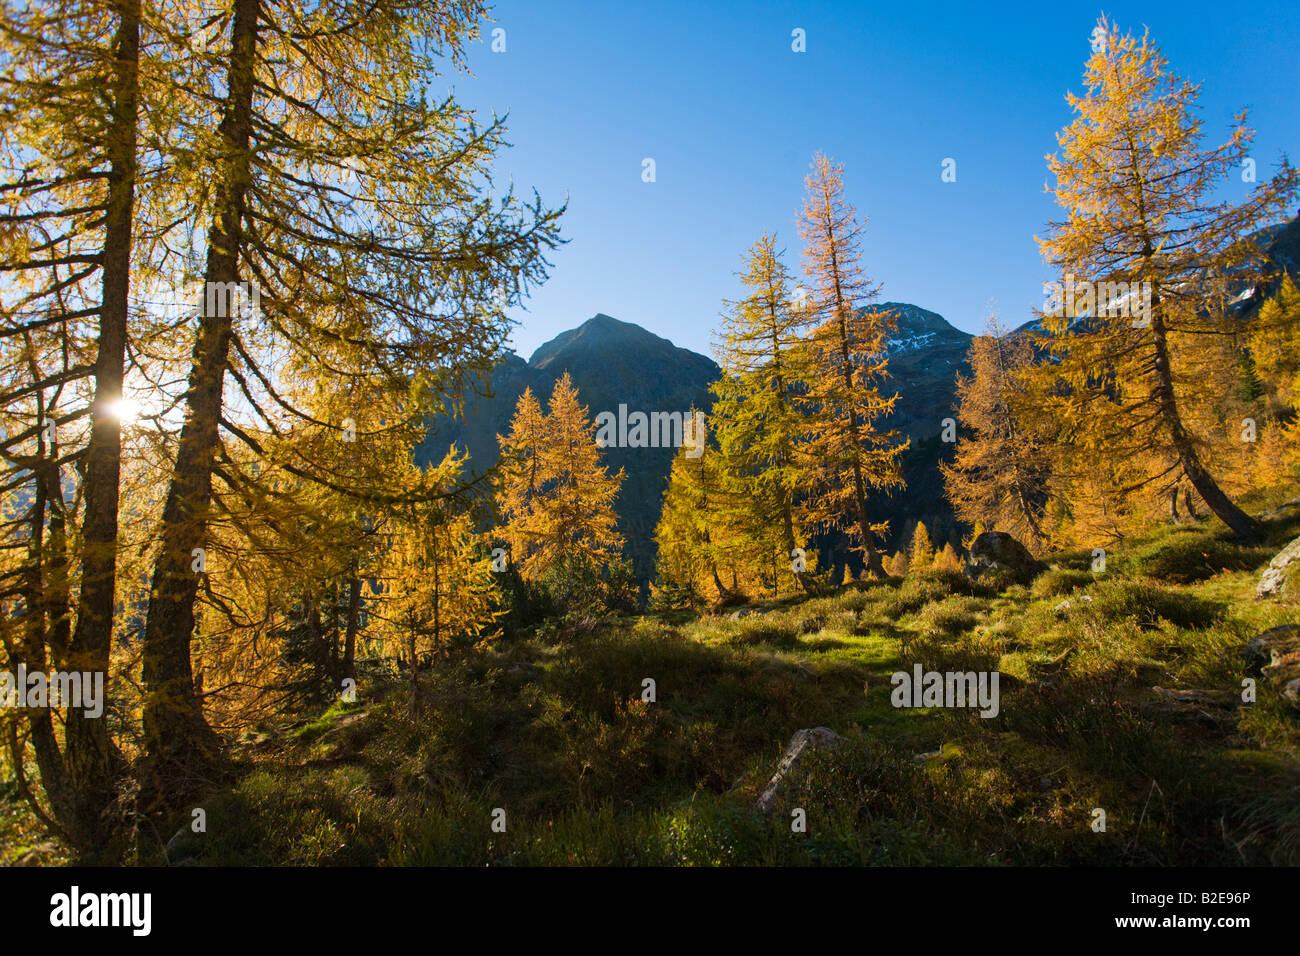 Larch trees on mountain, Niedere Tauern, Austria Stock Photo